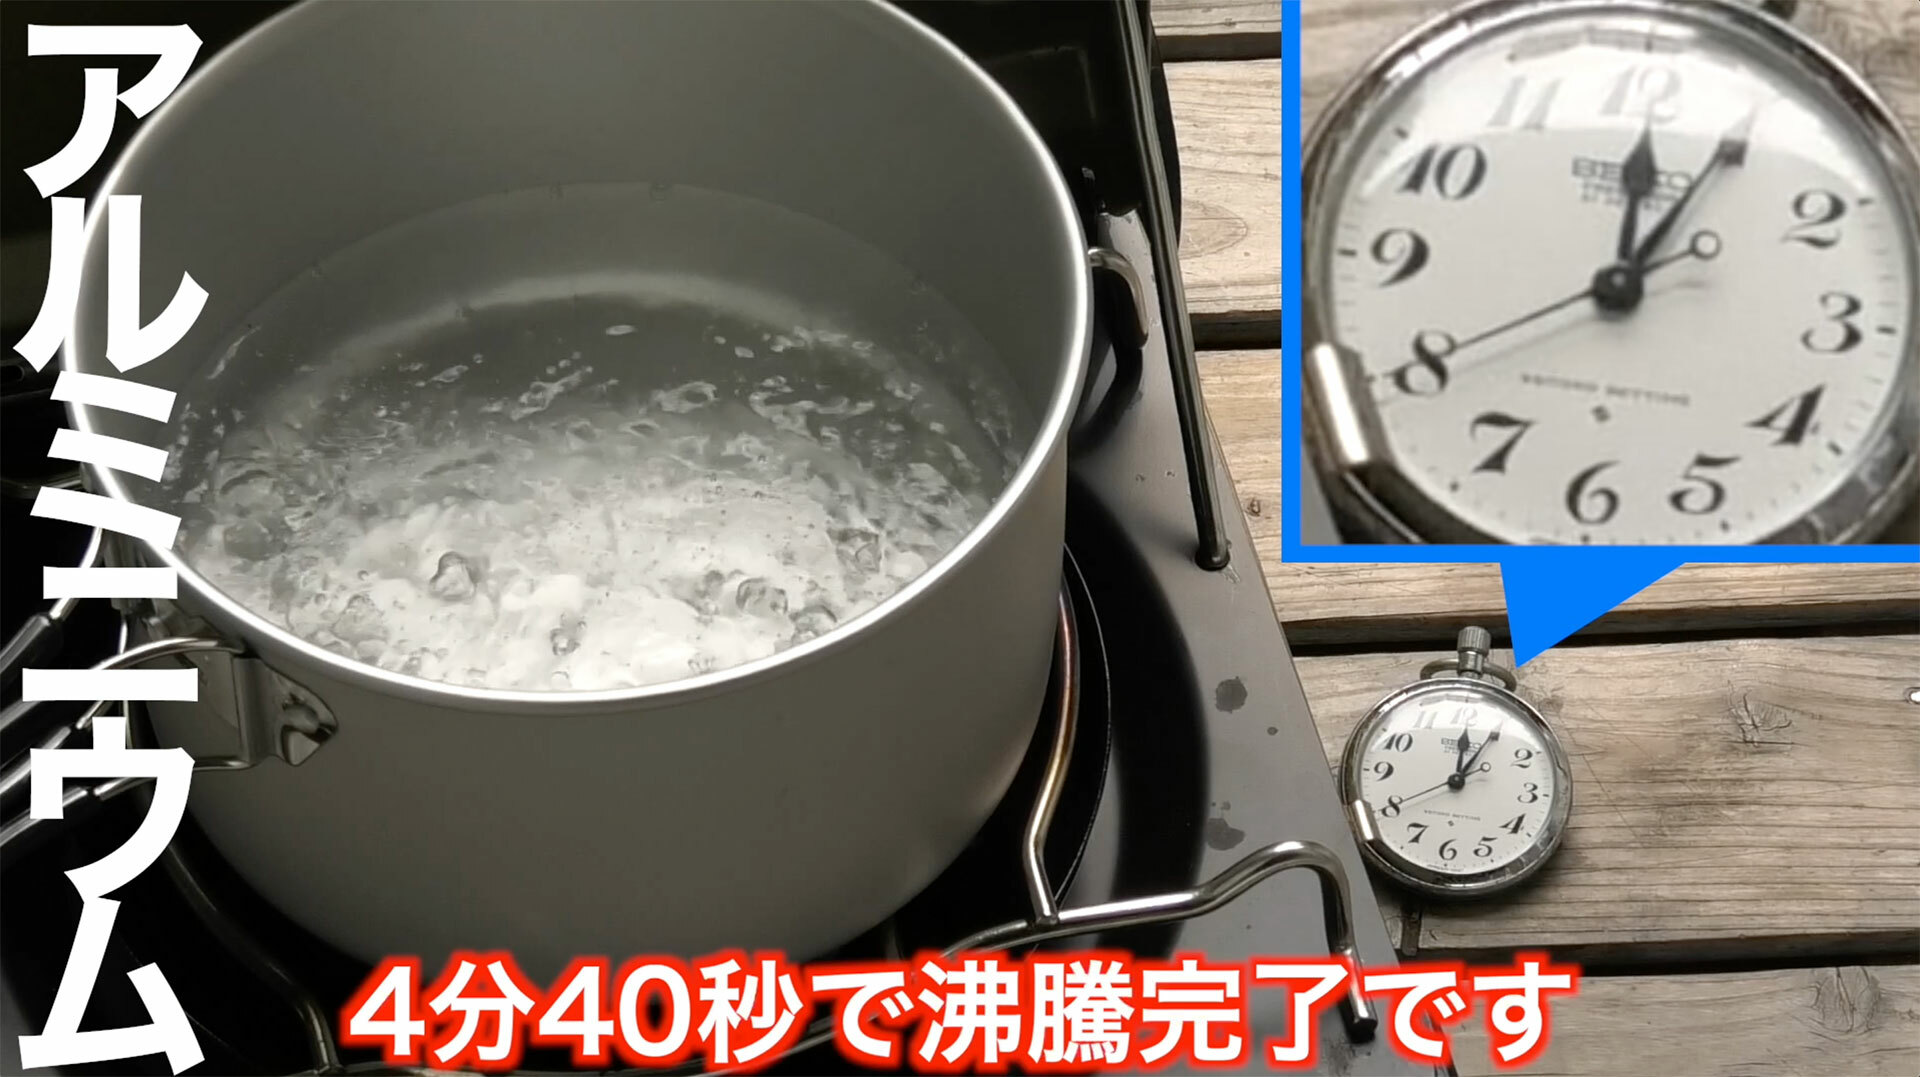 アルミ製クッカーは4分33秒で沸騰開始、4分40秒で煮沸状態